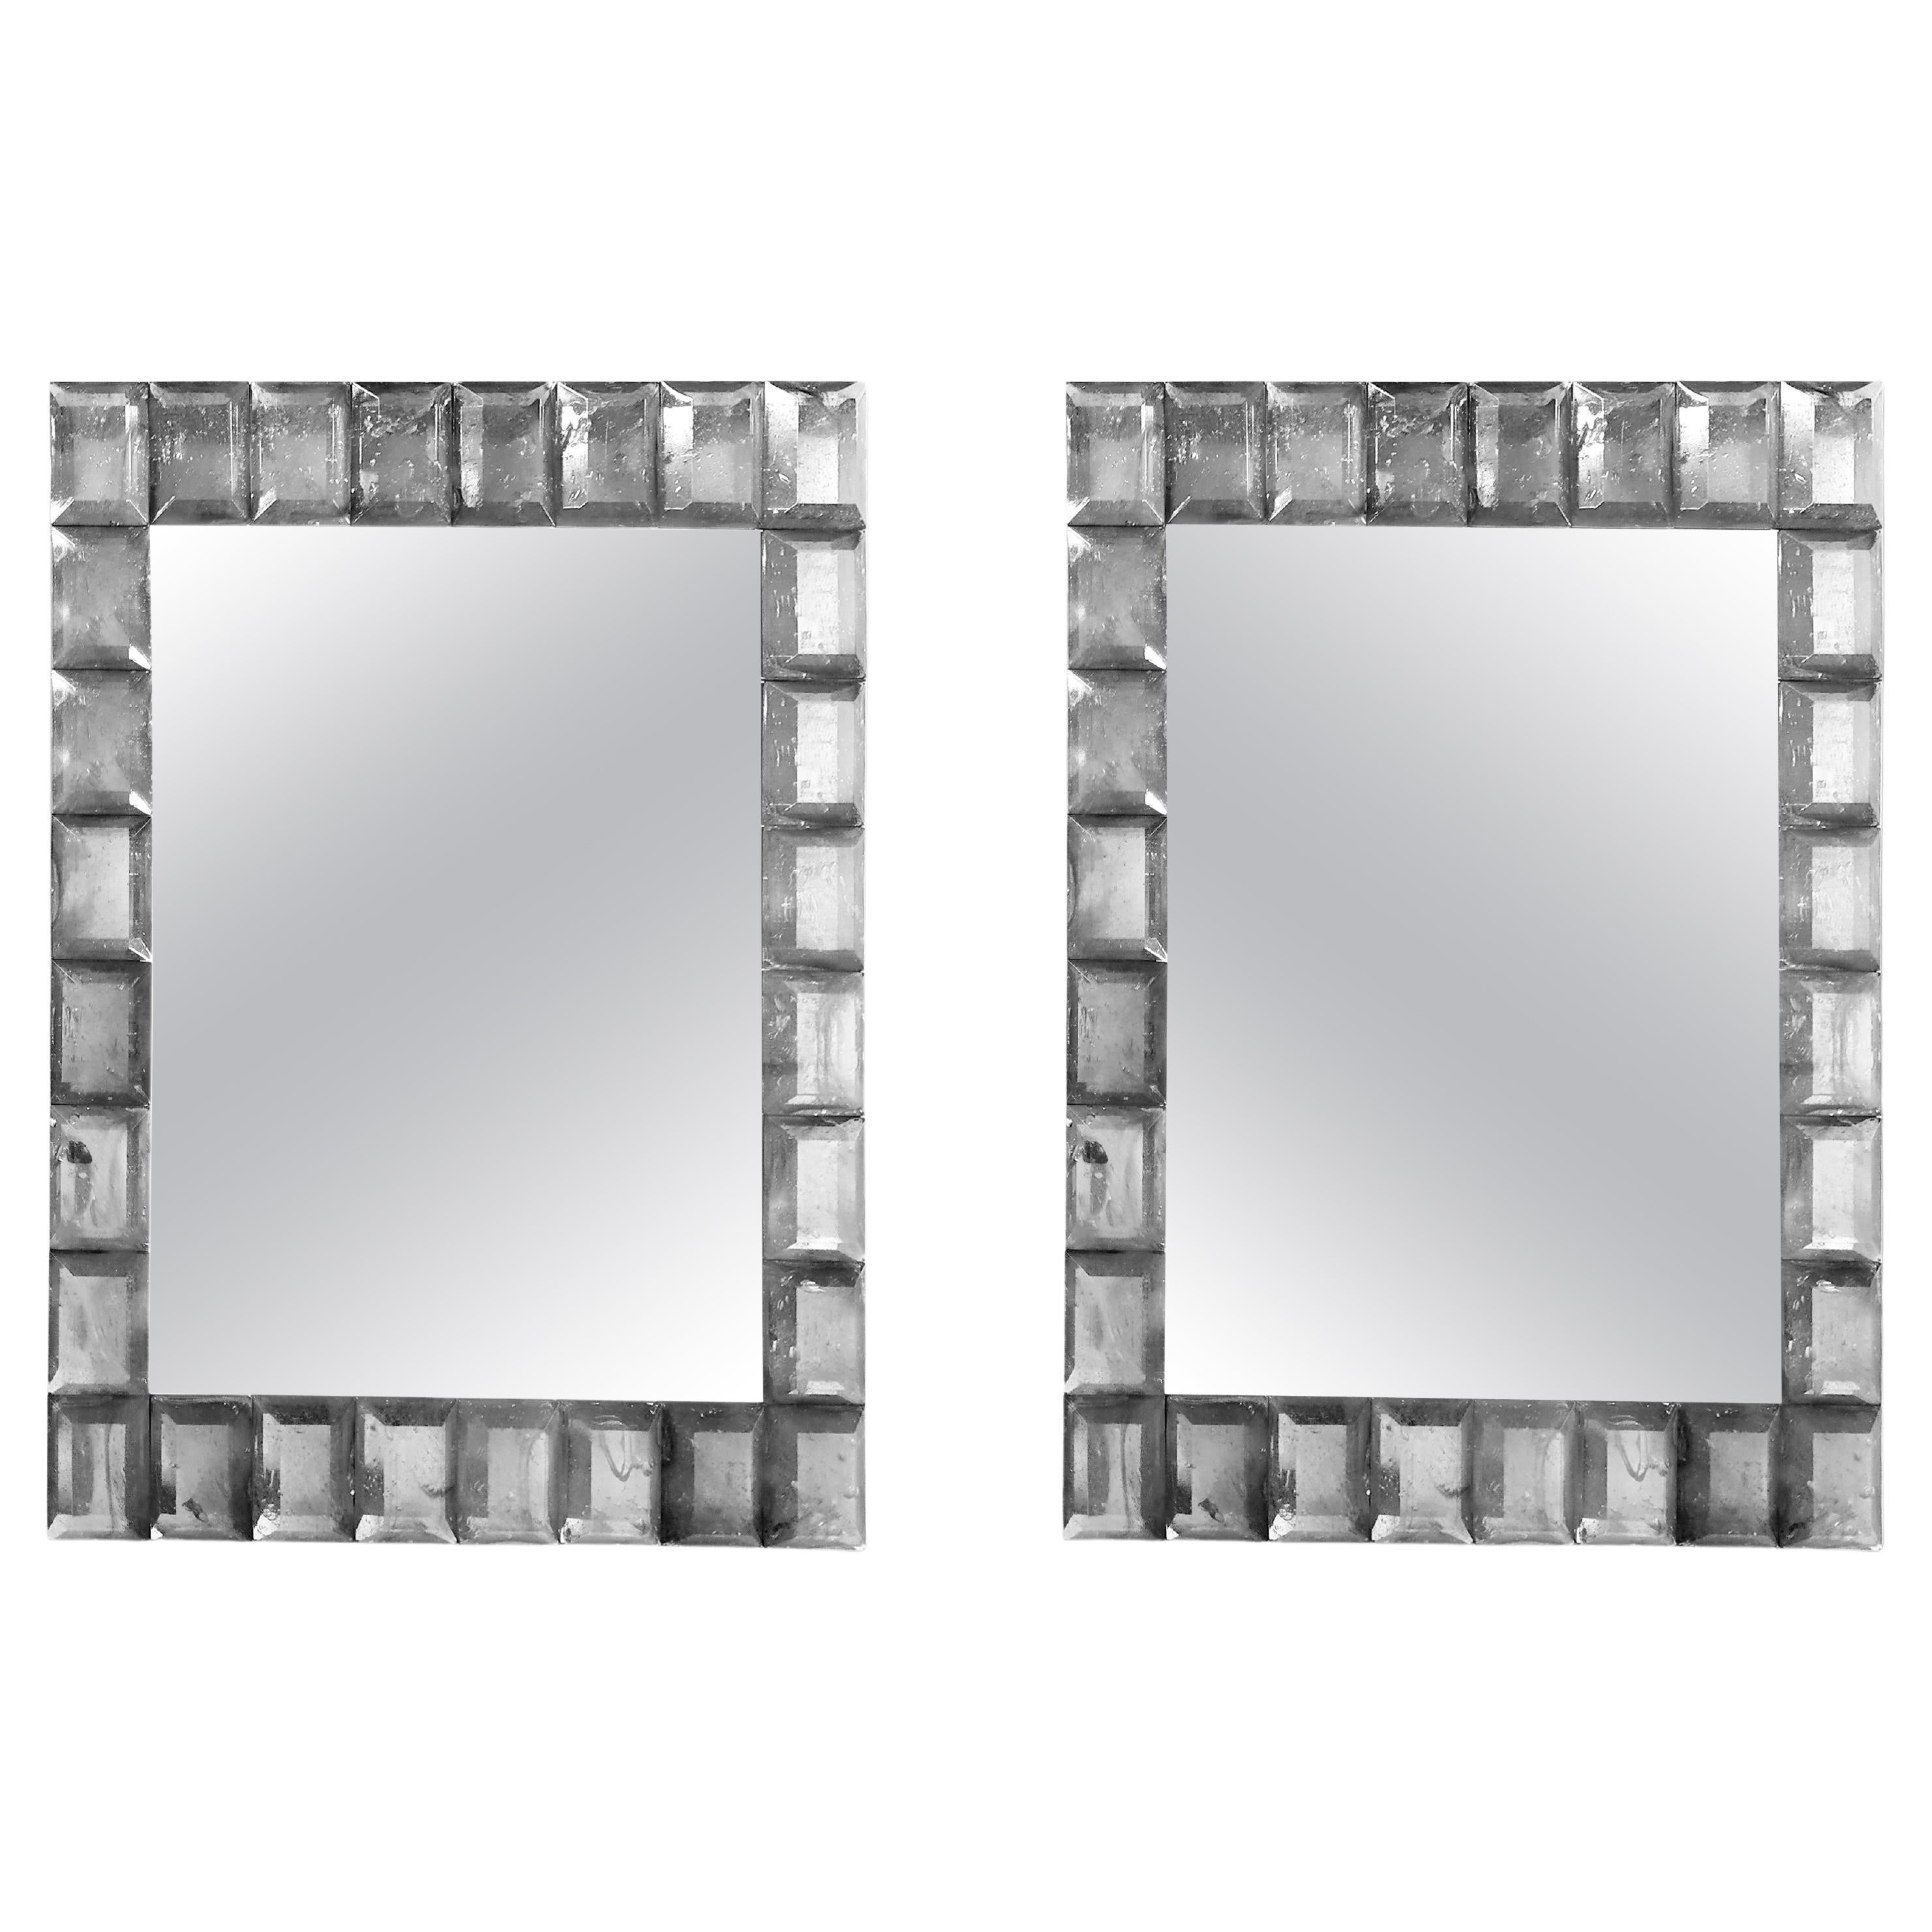 "Silver" Murano Glass Mirror in Contemporary Style by Fratelli Tosi Murano